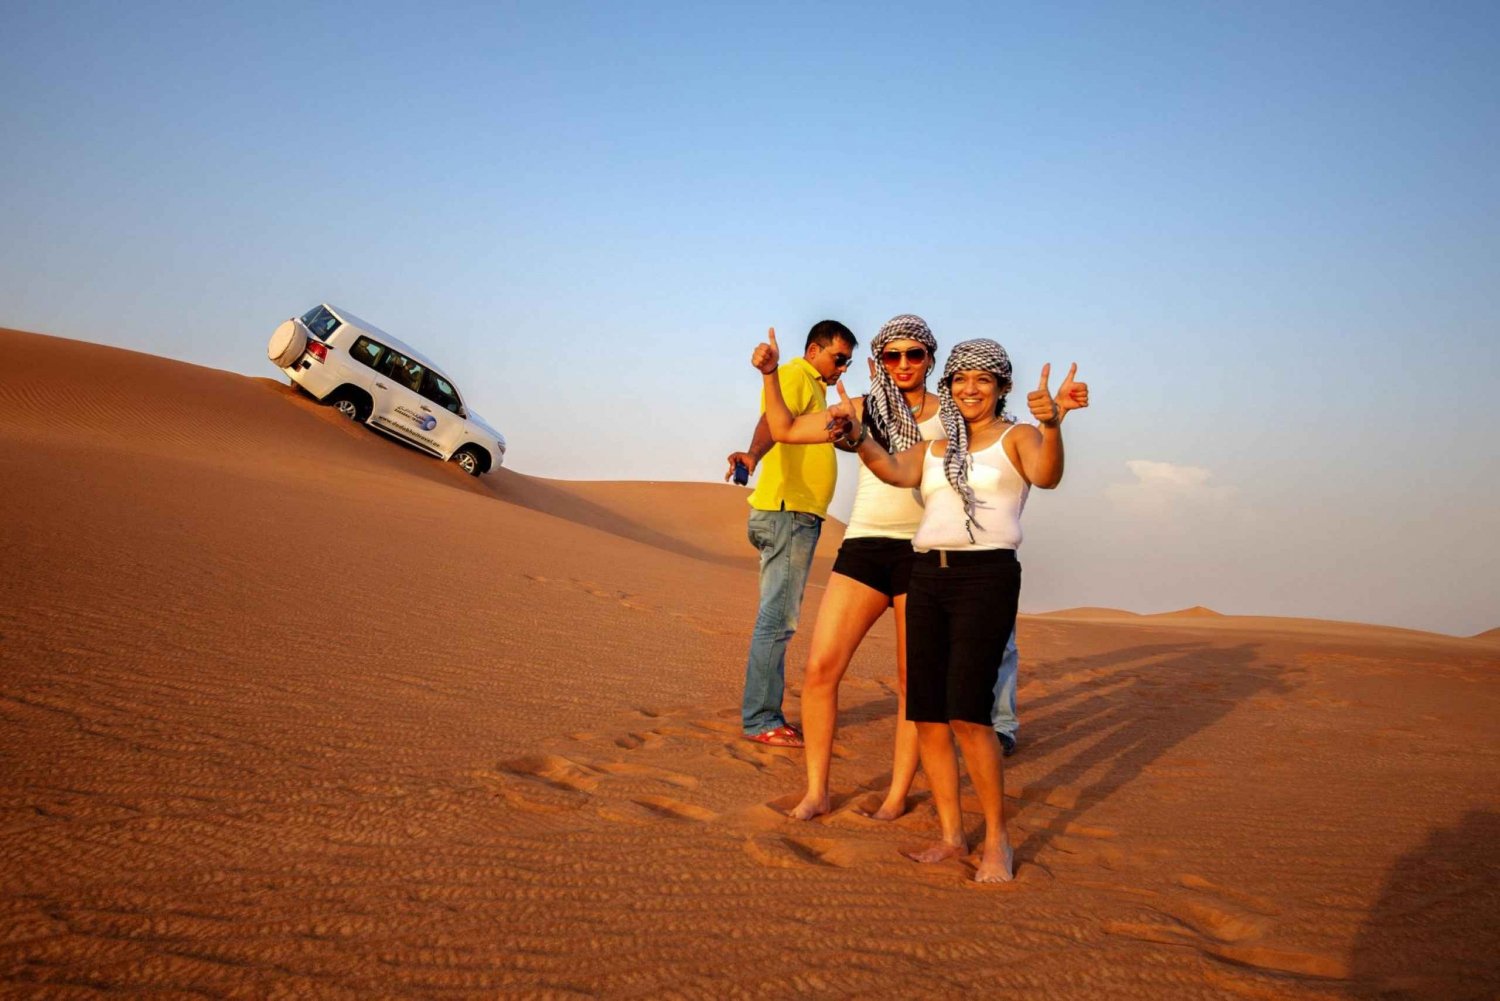 Dubai: tour nel paesaggio urbano e safari nel deserto